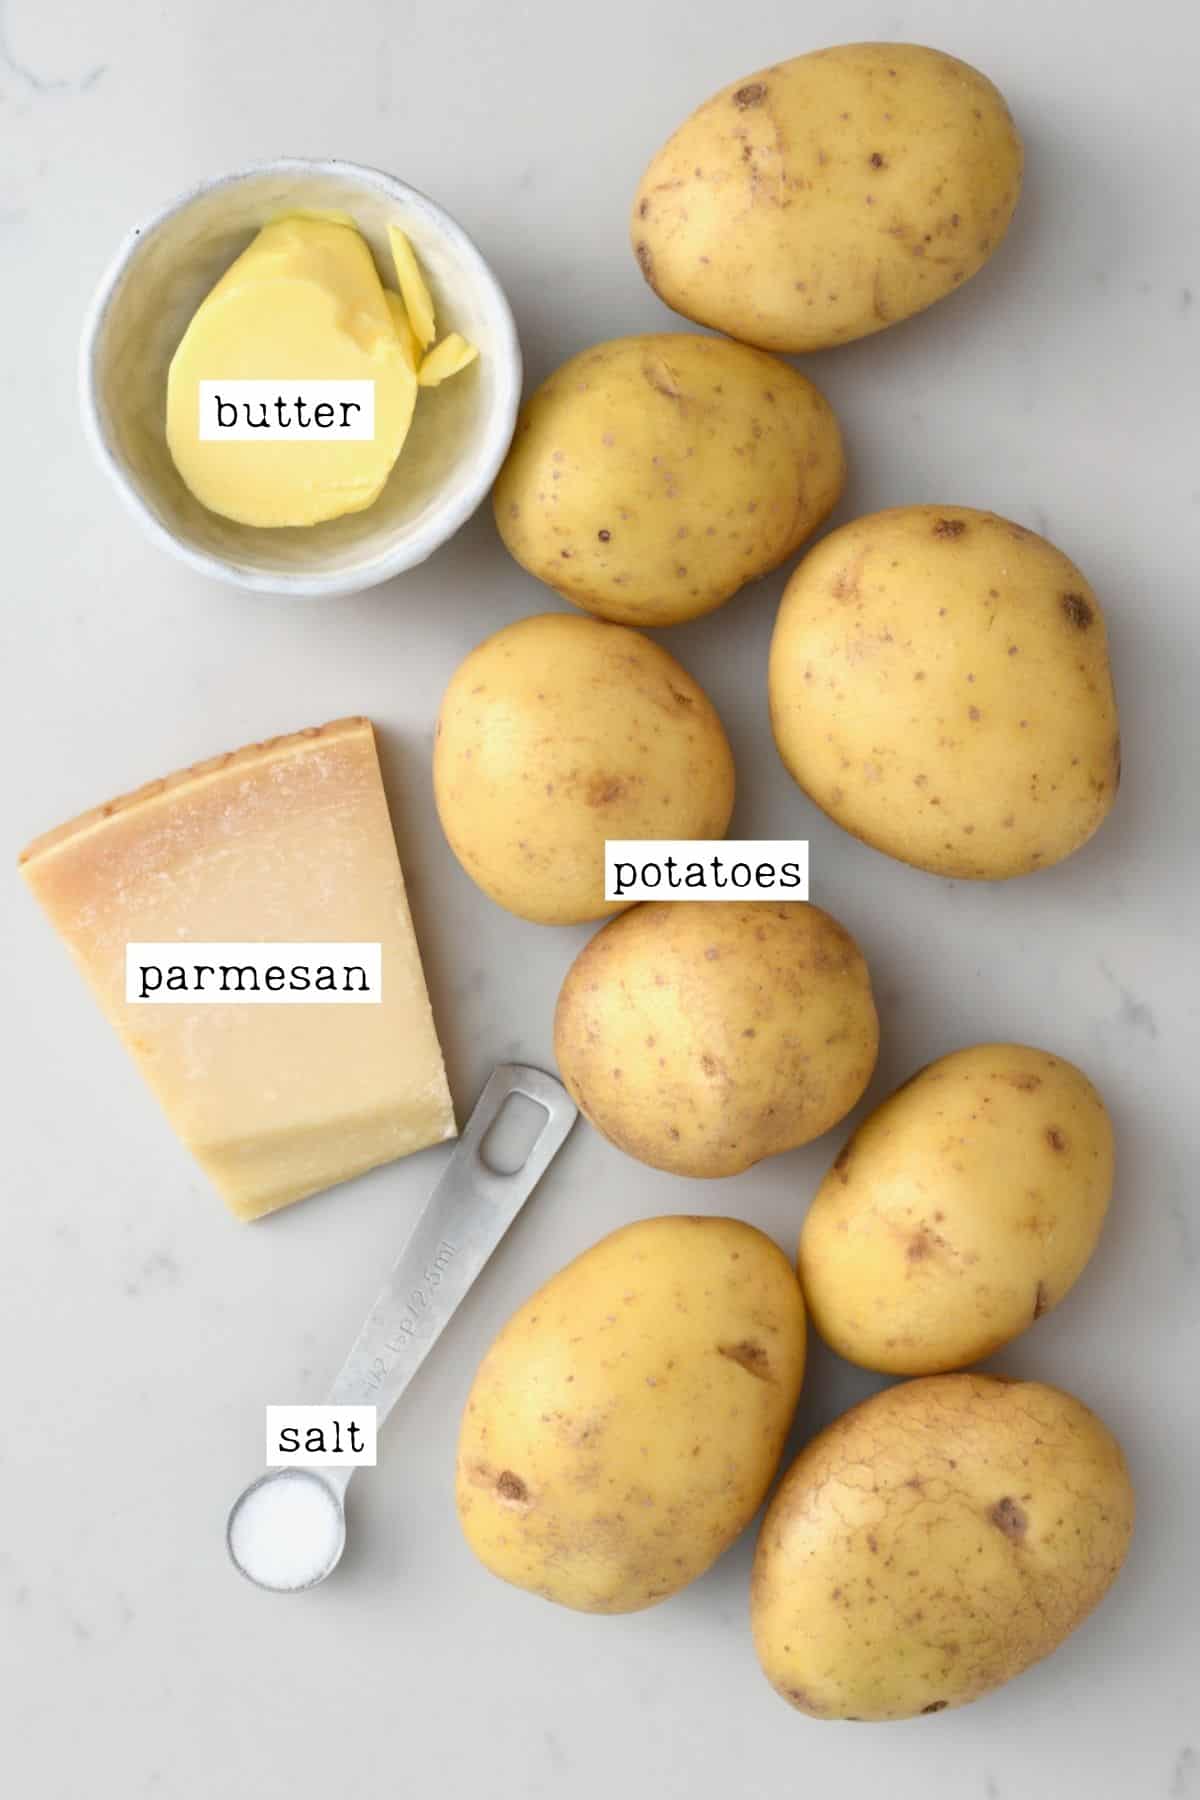 Ingredients for crispy potato stacks